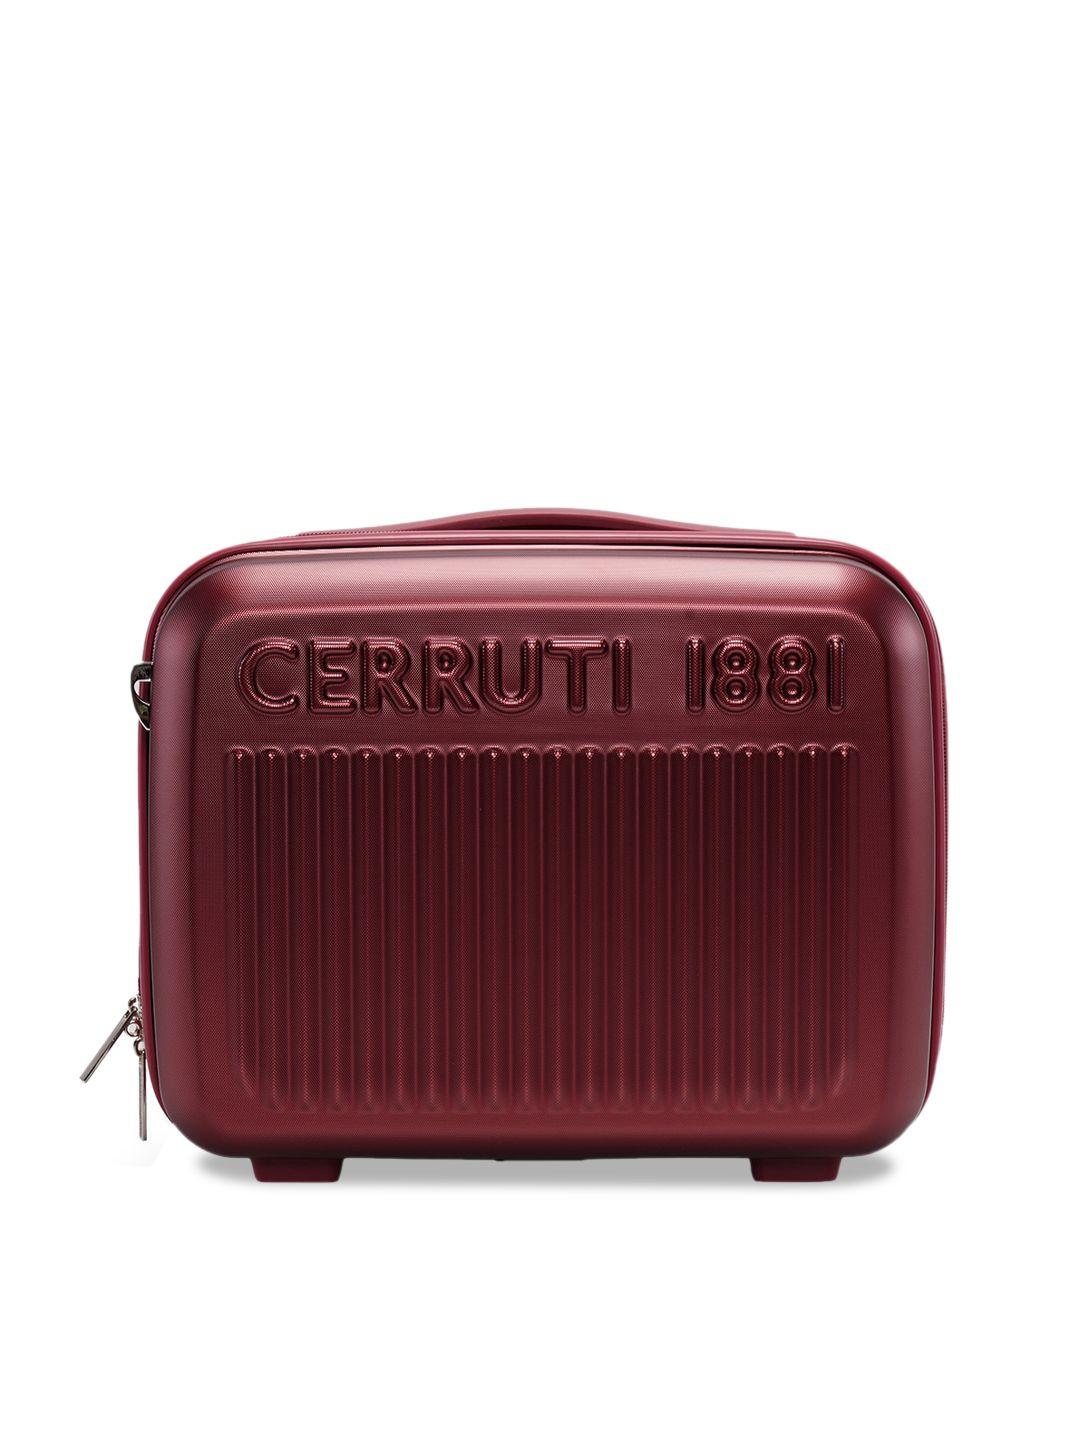 cerruti 1881 cer06088b hard medium beauty case vanity bag